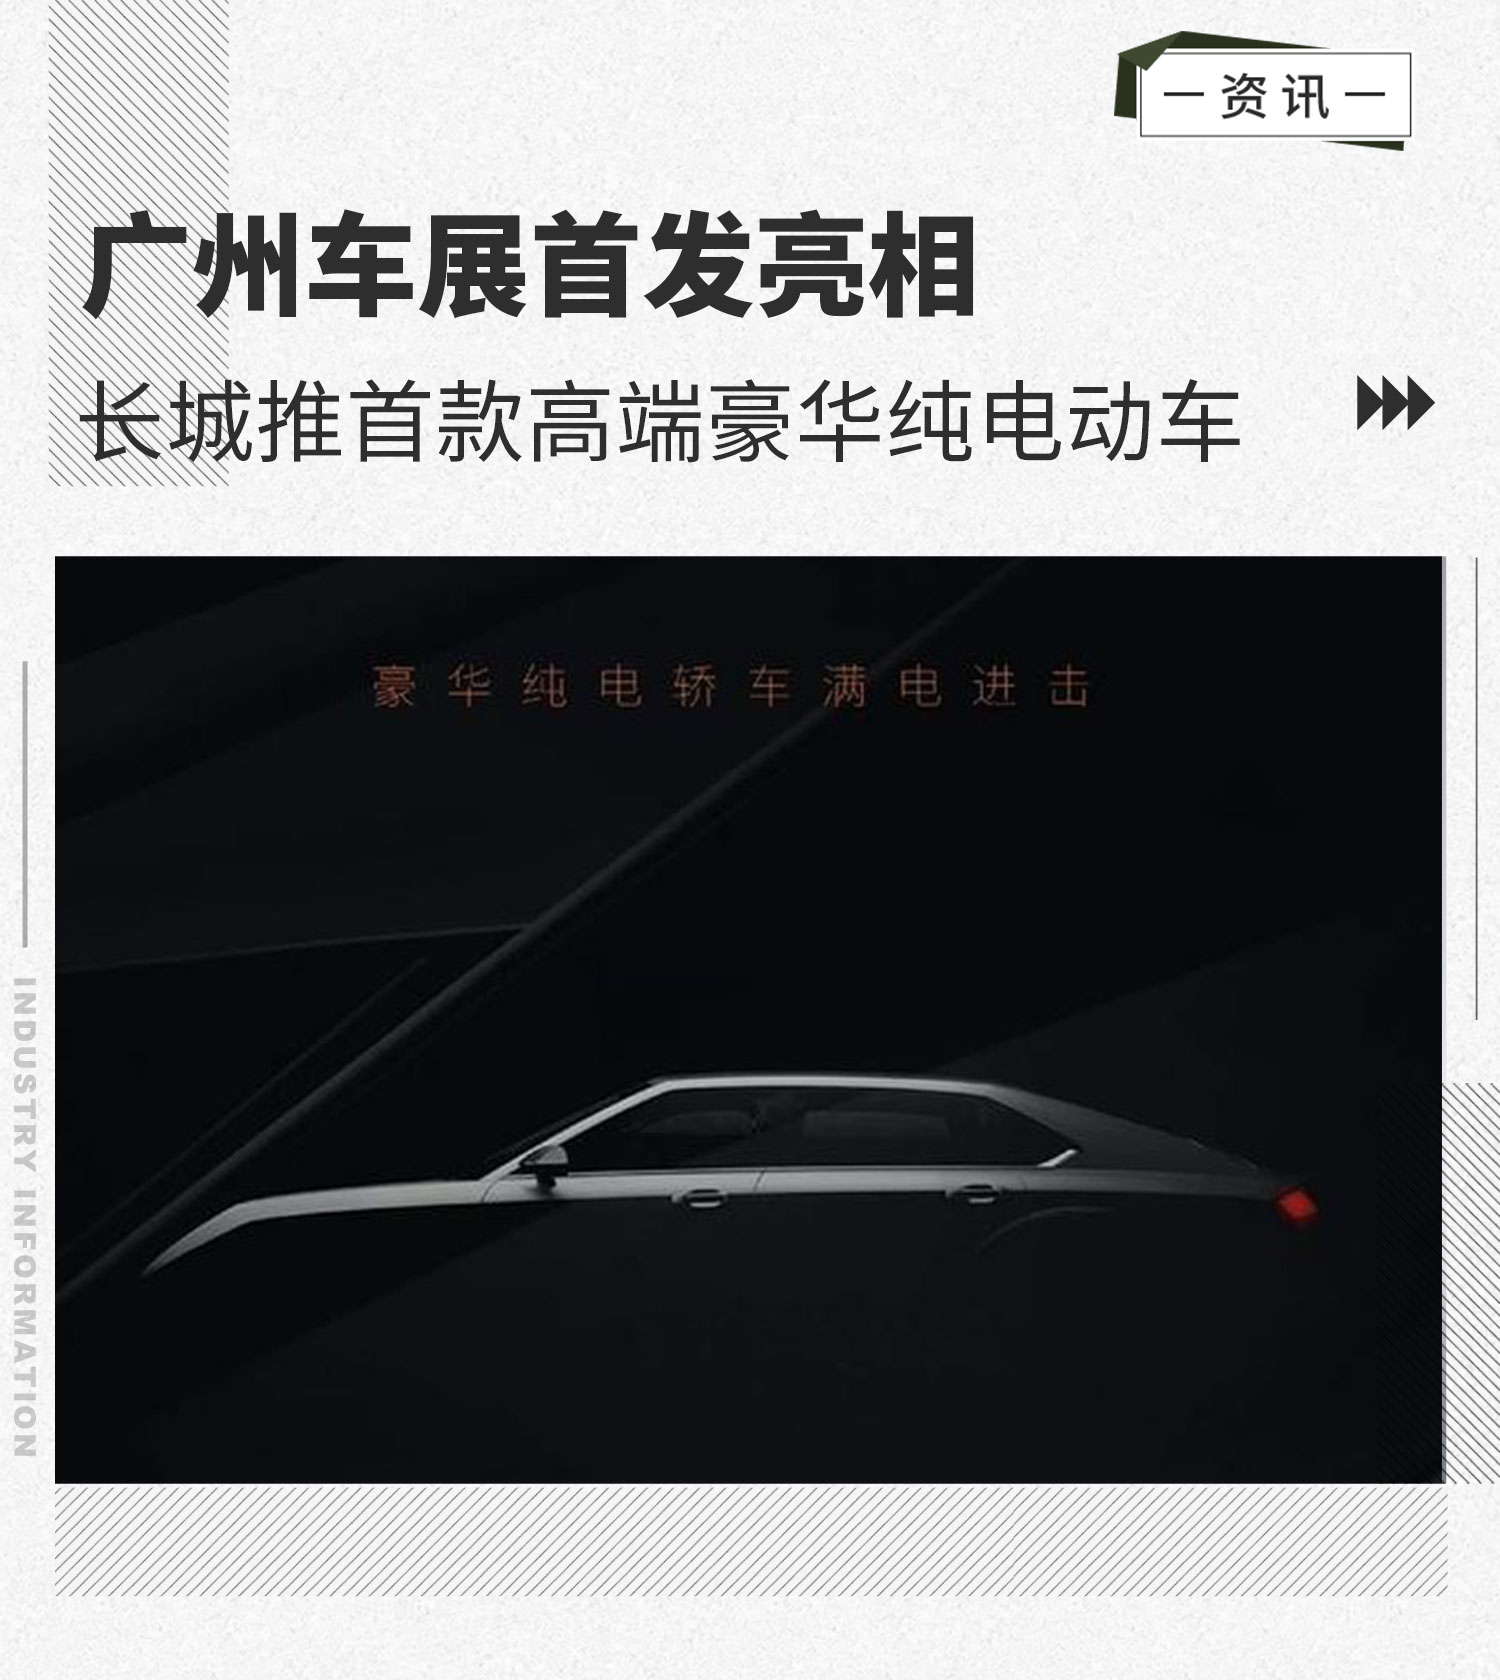 广州车展首发亮相 长城推首款高端豪华纯电动车